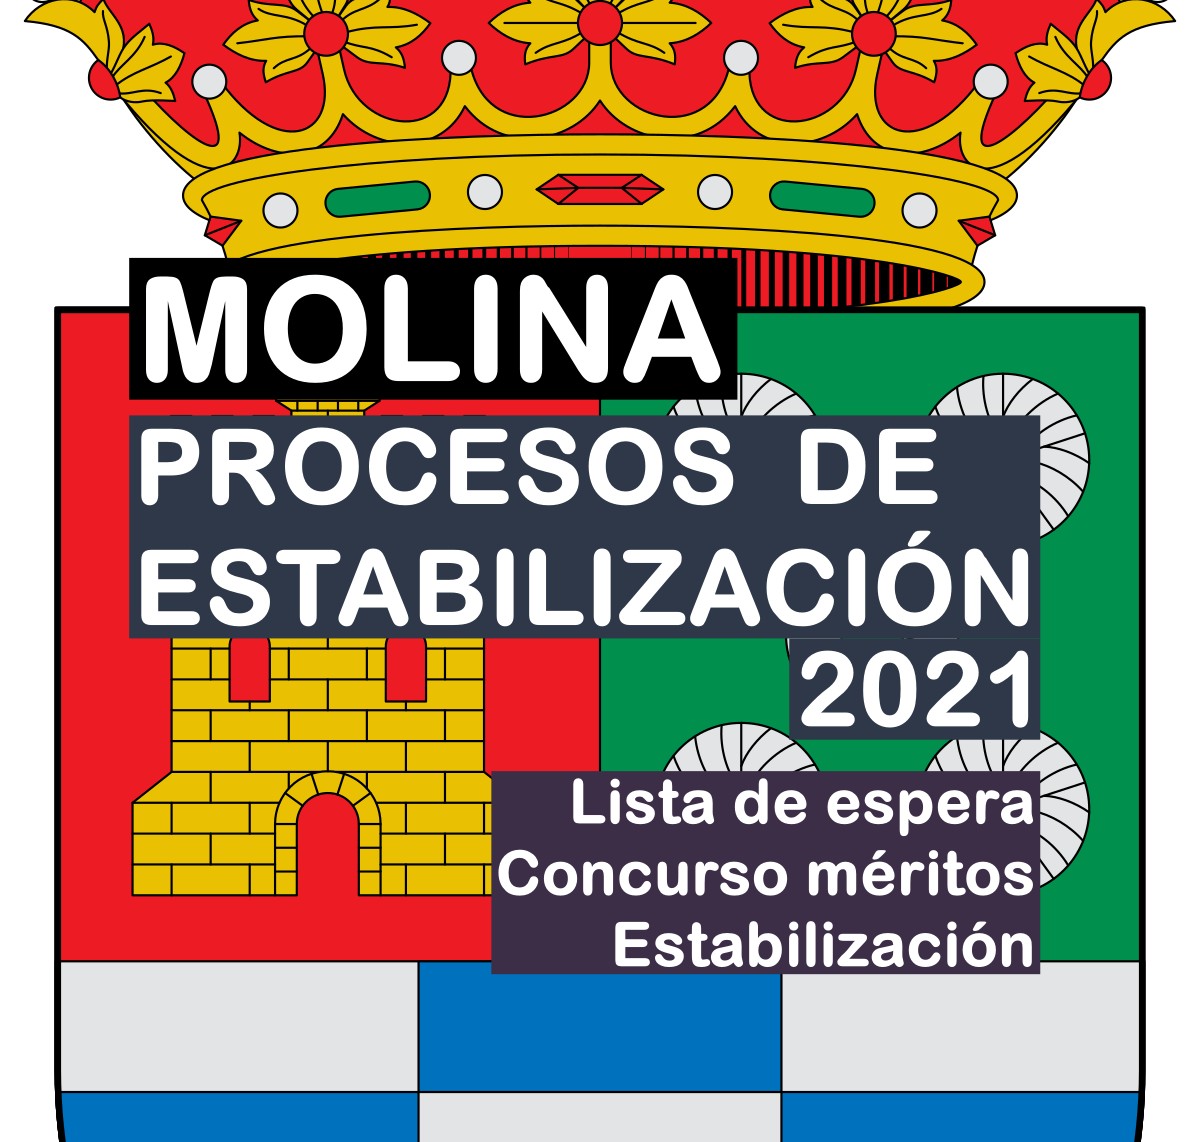 Procesos selectivos de estabilización de empleo temporal con lista de espera en Molina de 2021